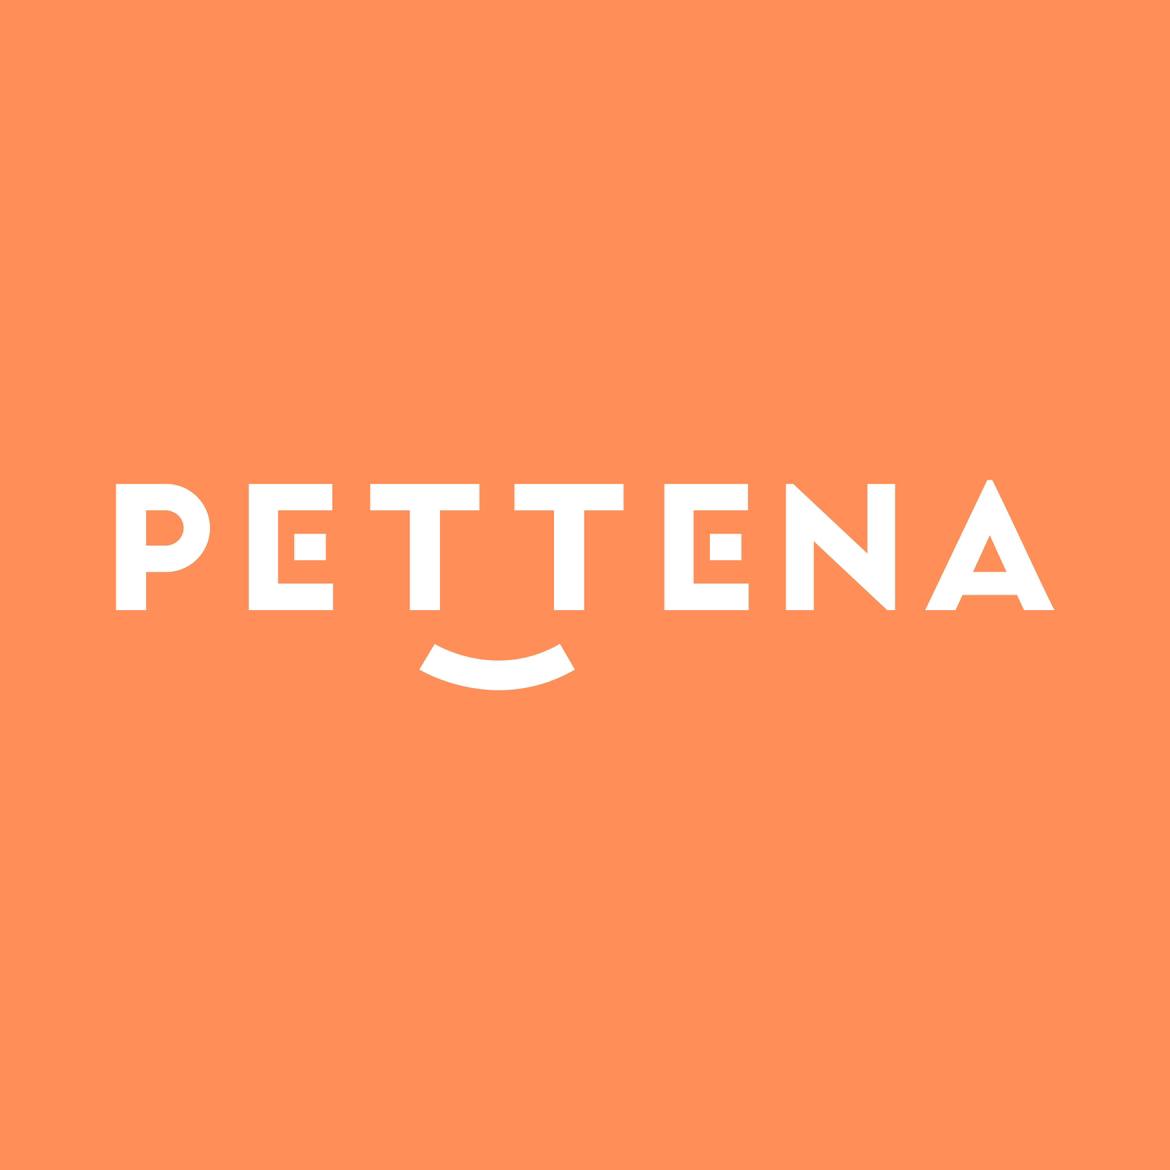 PETTENAの画像